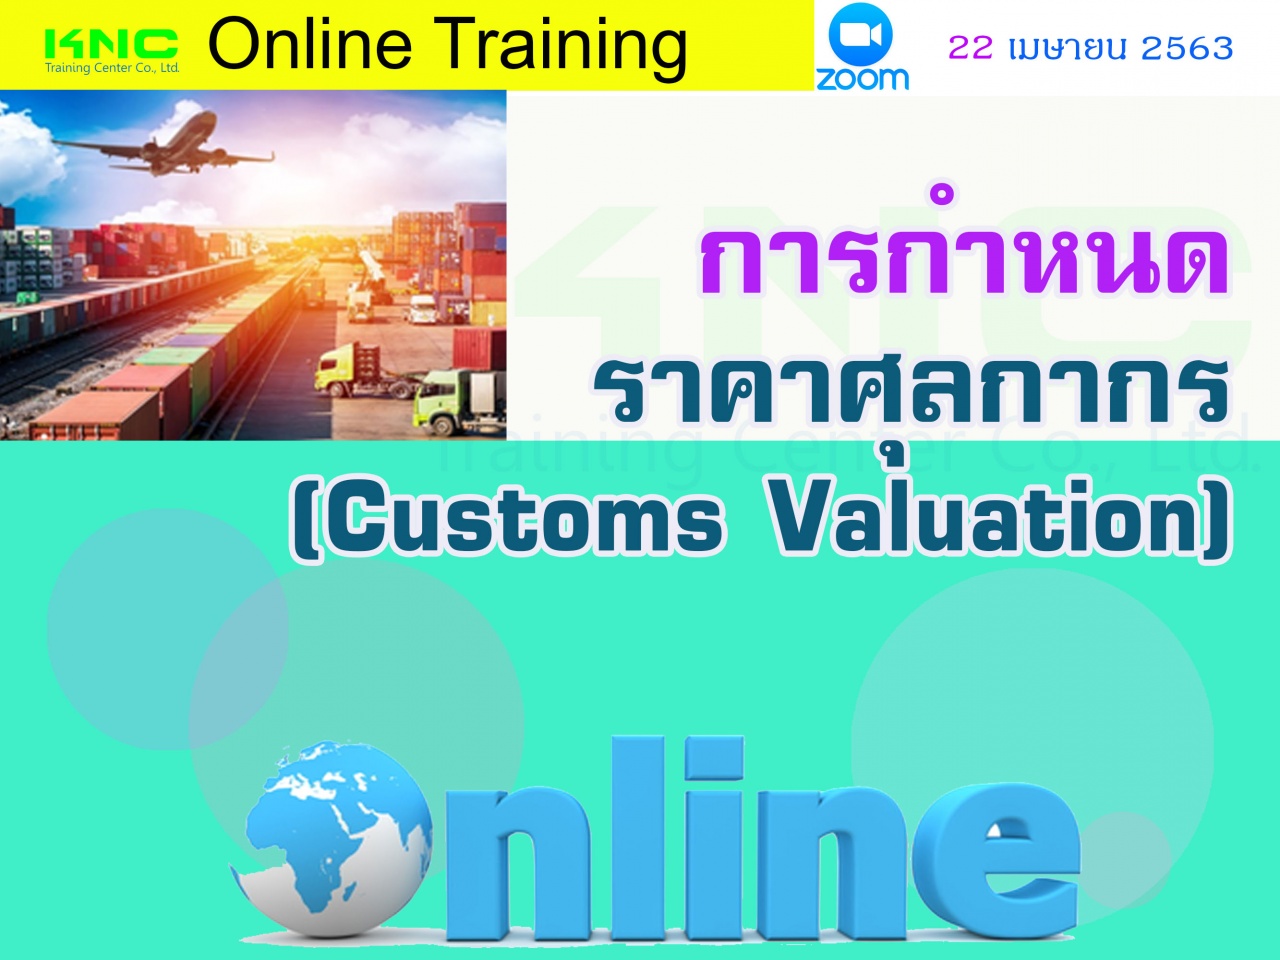 สัมมนาออนไลน์ : การกำหนดราคาศุลกากร (Customs Valuation)